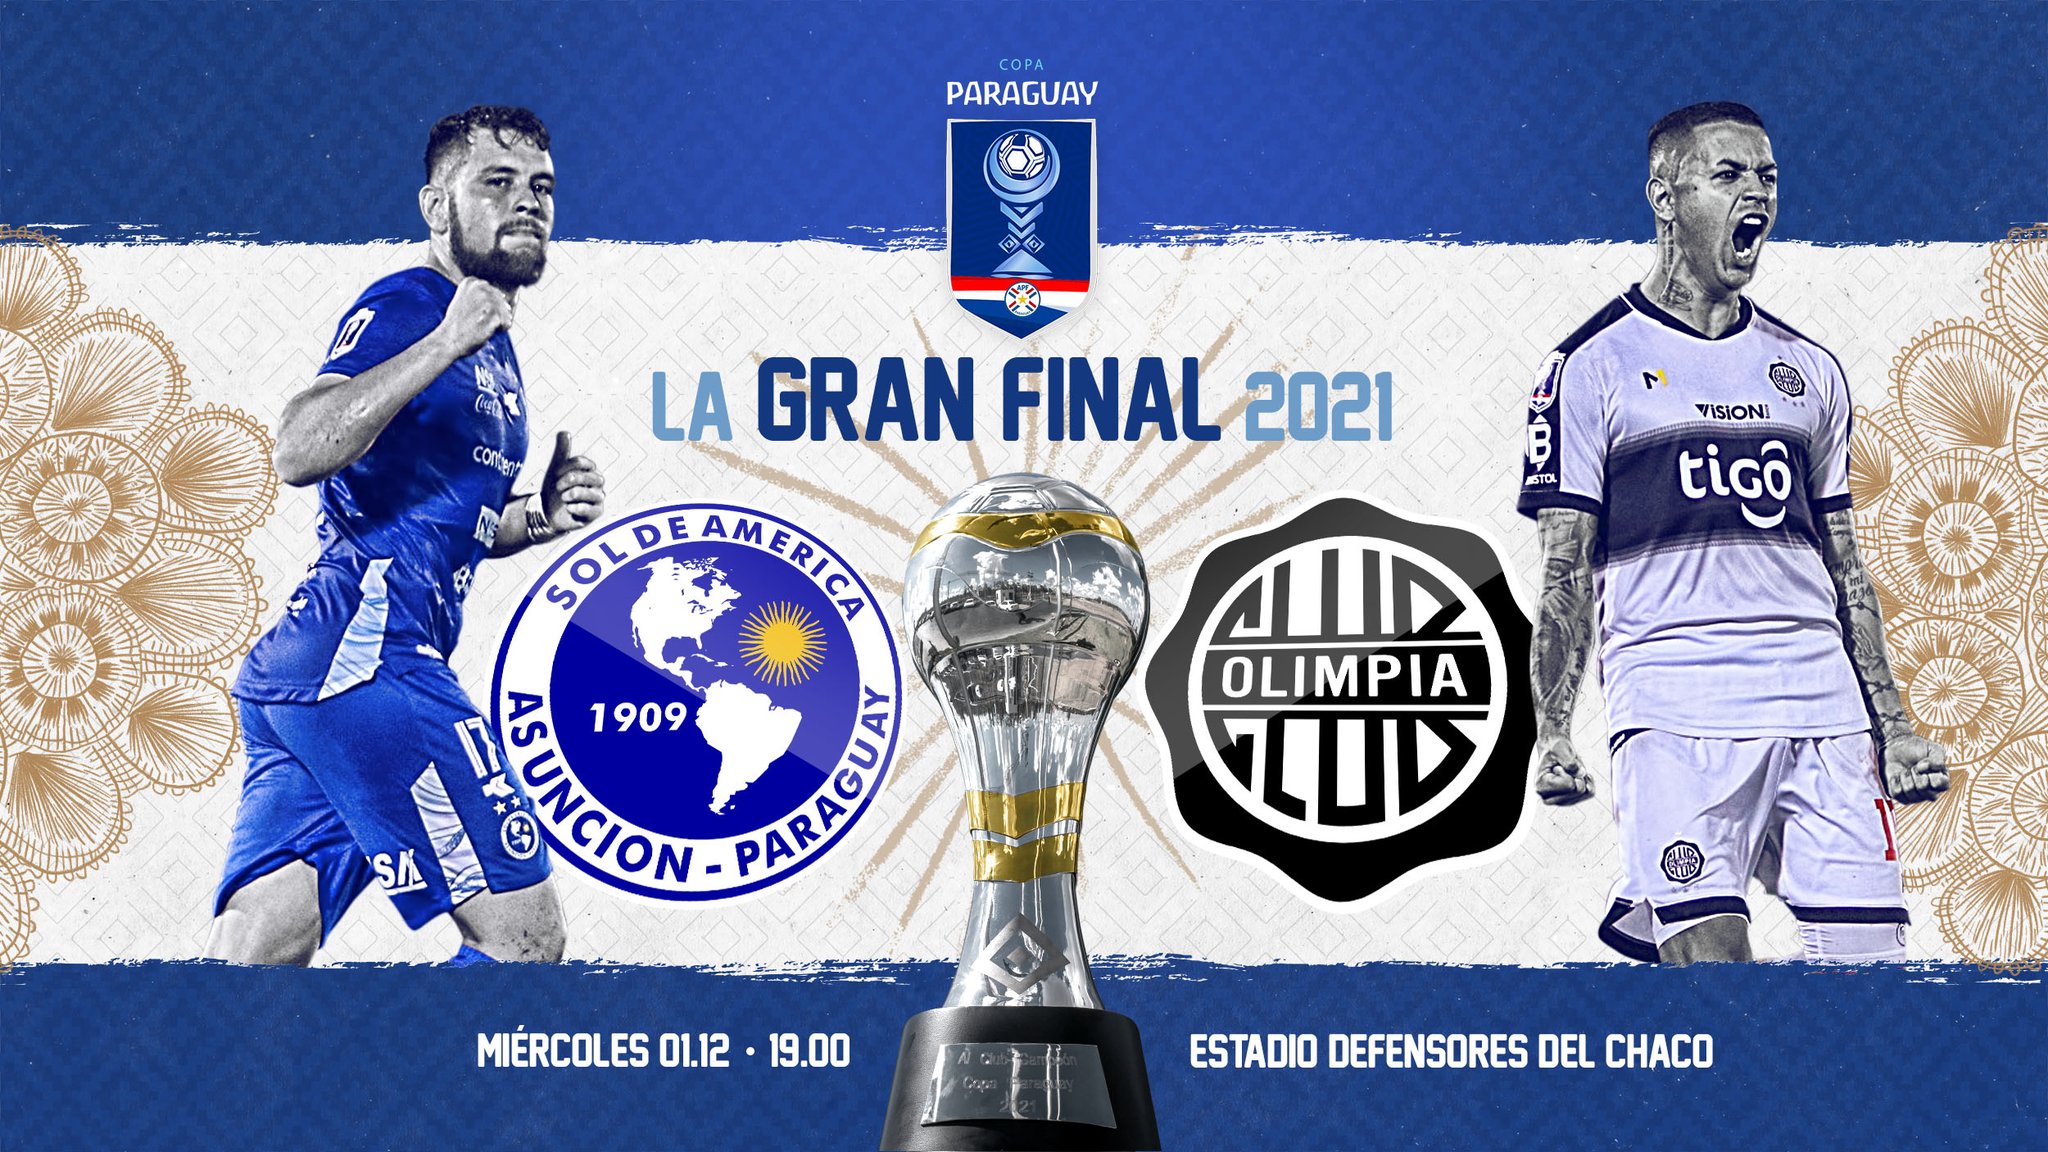 Copa Paraguay - La Gran Final 2021. Foto: APF.